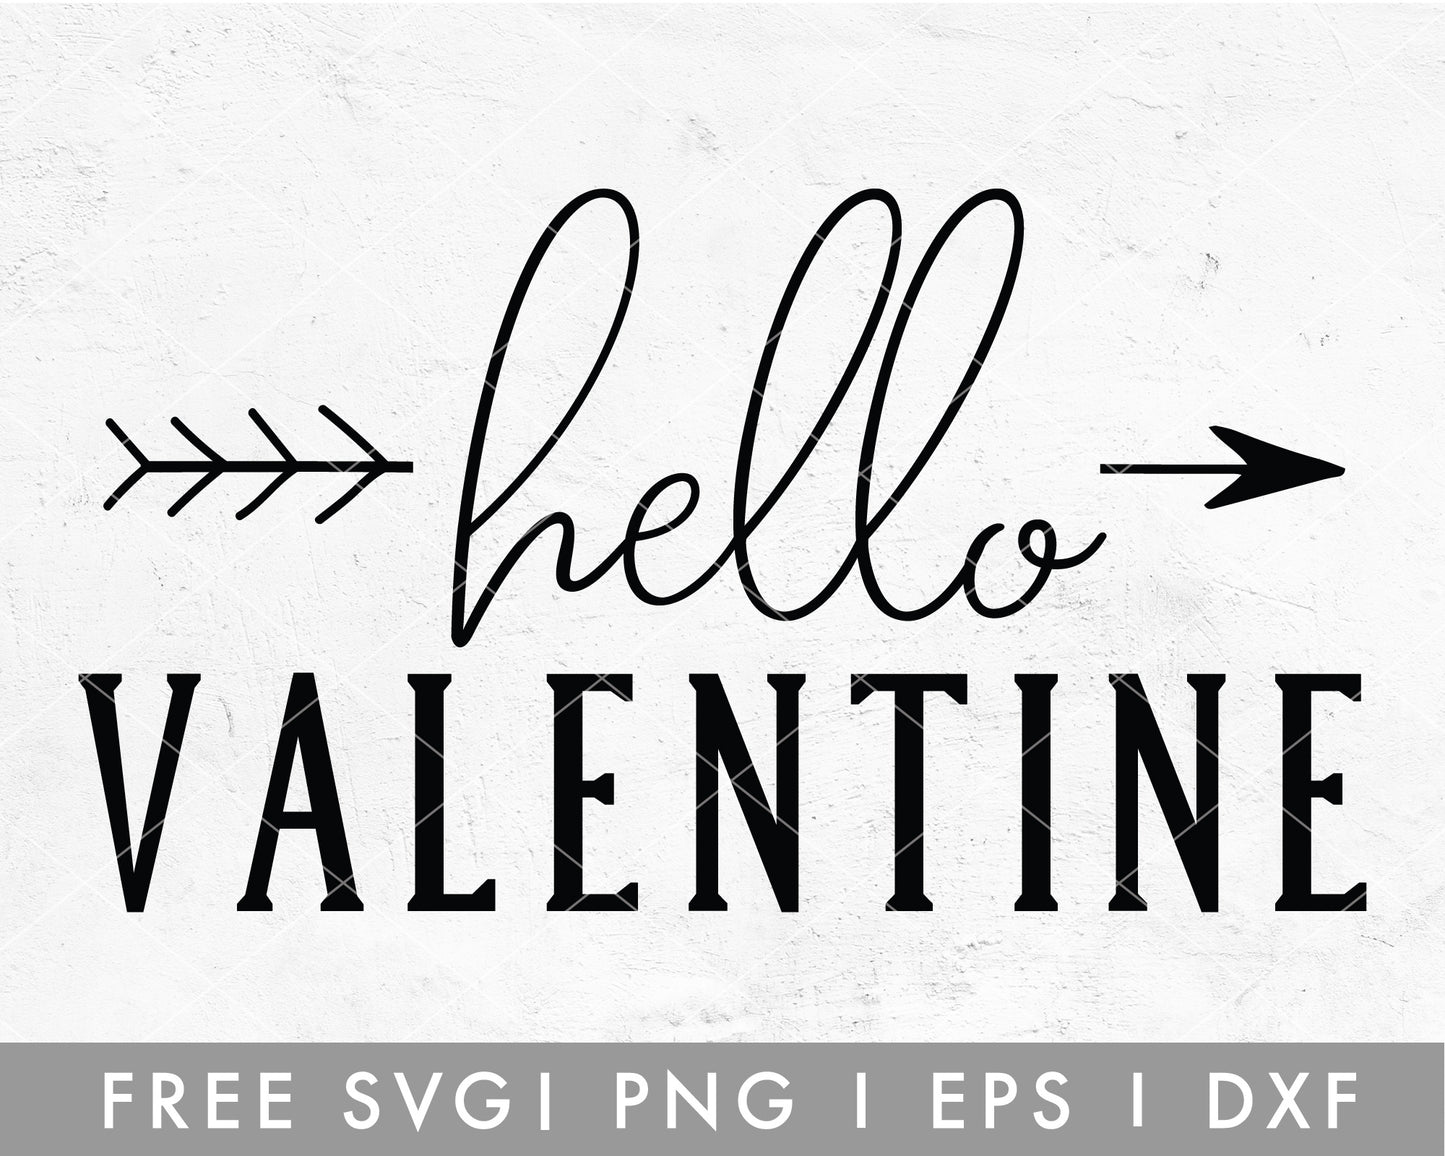 Hello Valentine SVG Cut File for Cricut, Cameo Silhouette | Free SVG Valentine's Day